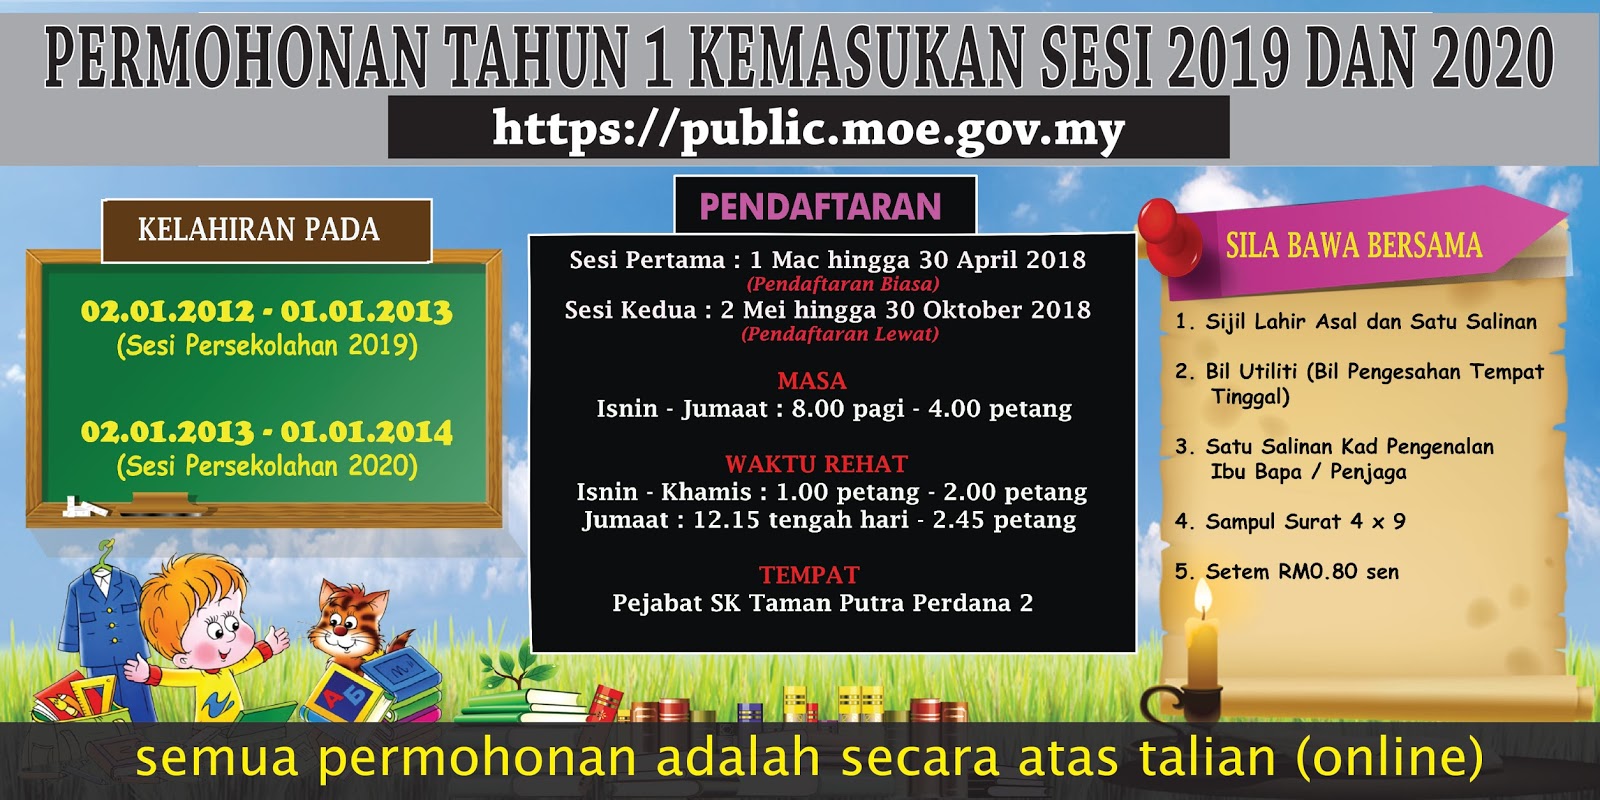 Pendaftaran Tahun 1 Secara Online Bagi Kemasukan 2019 Dan 2020 Permohonan Kemasukan Ke Prasekolah Kpm 2019 Sk Taman Putra Perdana 2